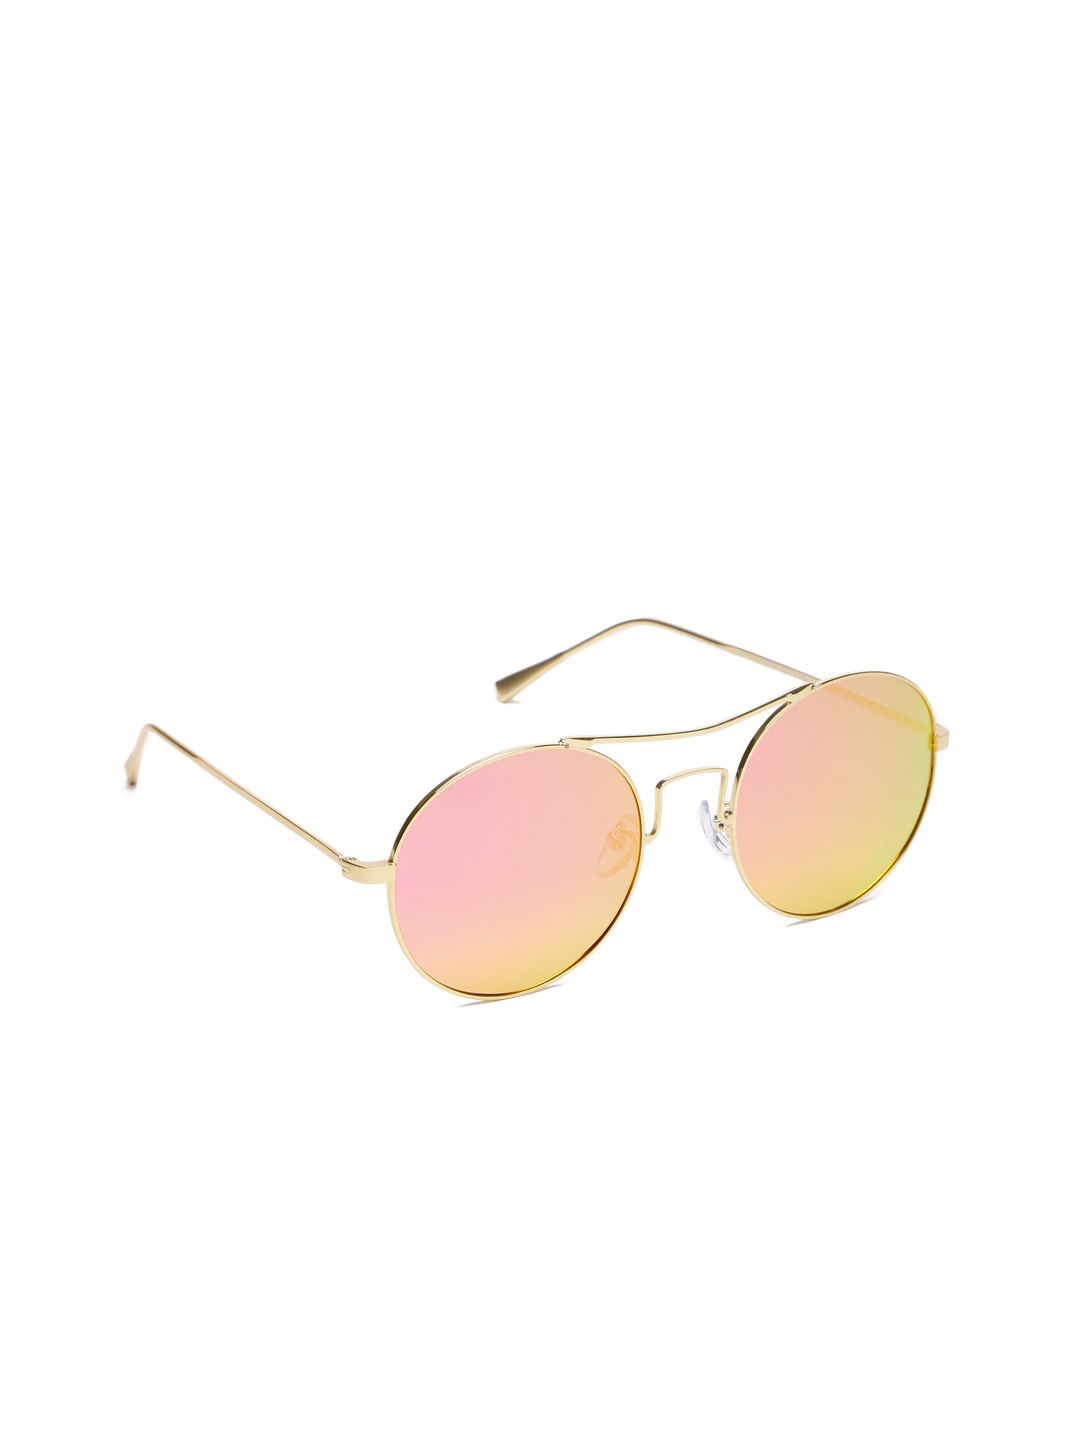 DressBerry Women Round Mirrored Sunglasses MFB-PN-TSD-2973-2 Price in India